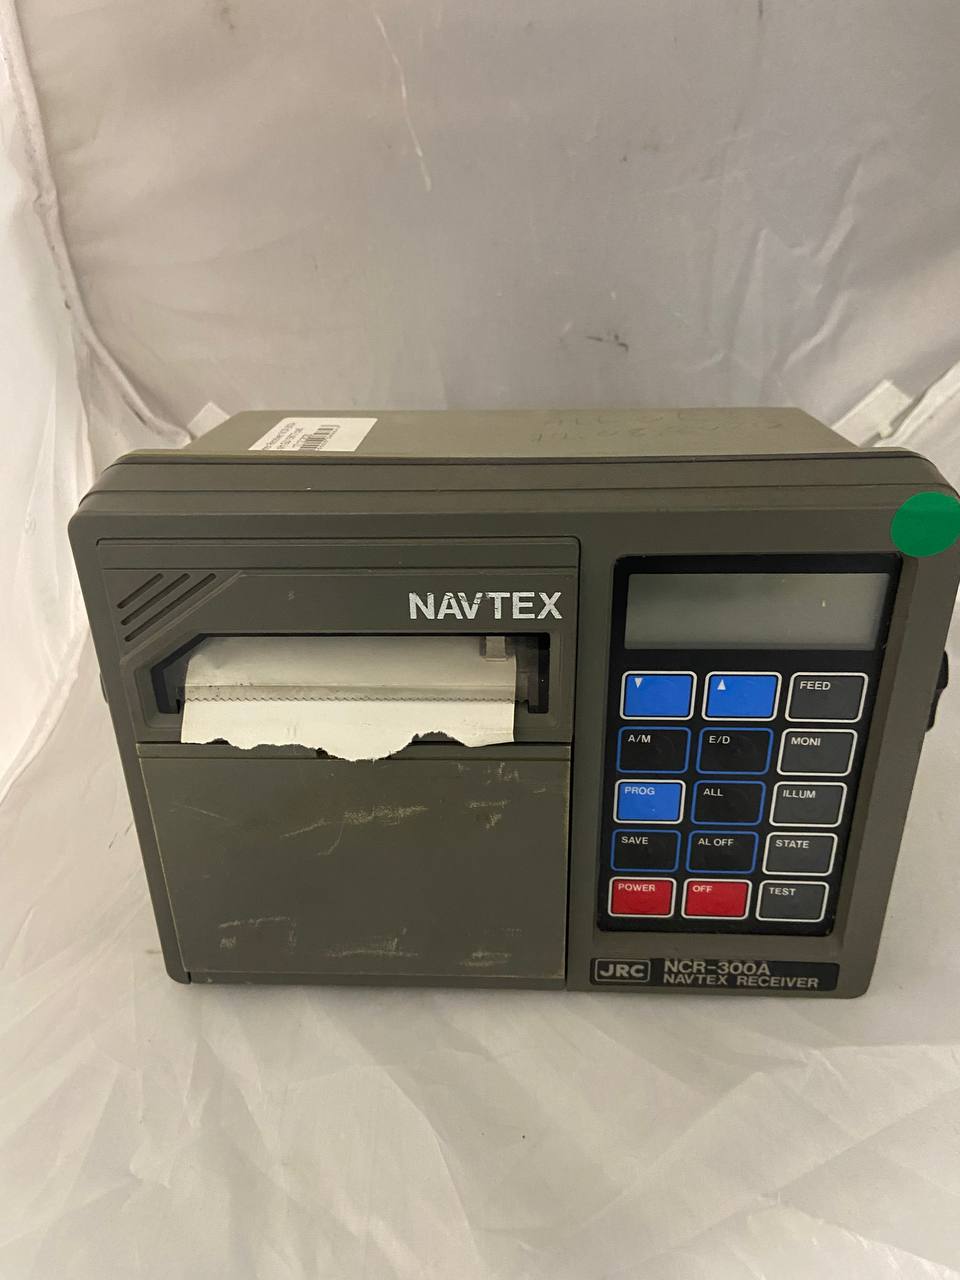 JRC Navtex Receiver NCR-300A б.у. s.n GD15677 раб. 1